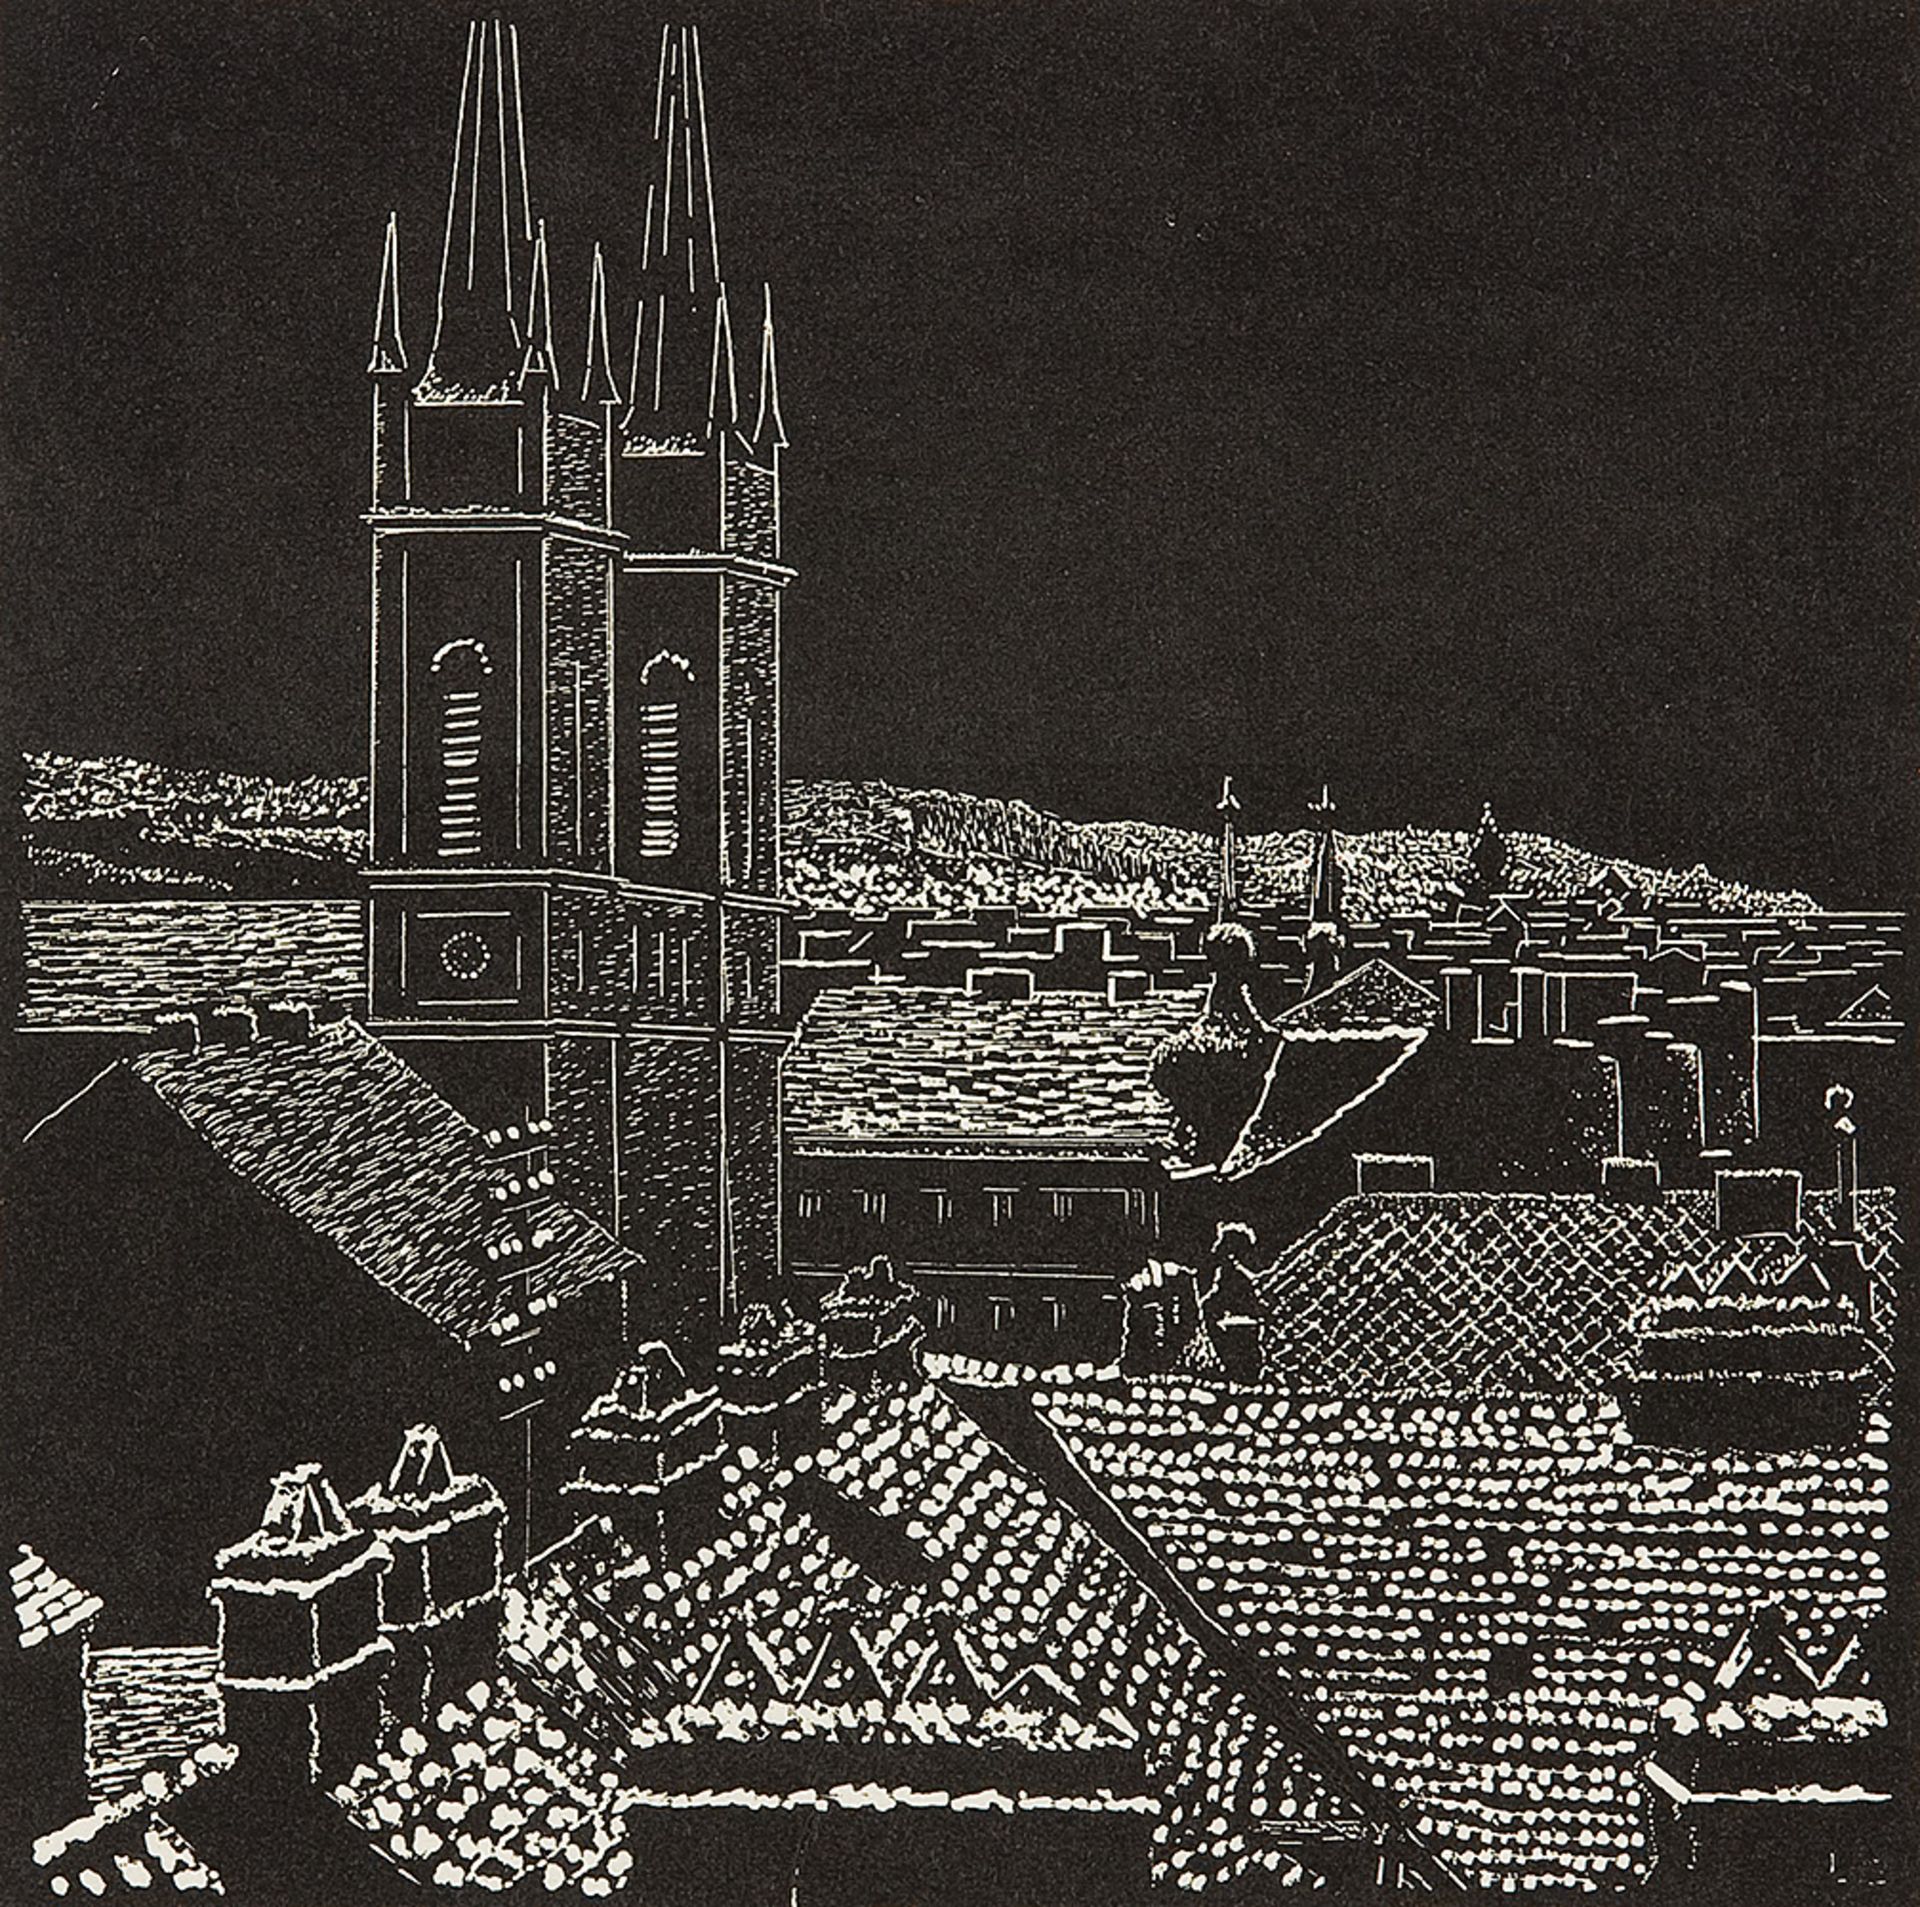 LEOPOLD BLAUENSTEINER (Wien 1880 - 1947 Wien) - Bild 3 aus 6